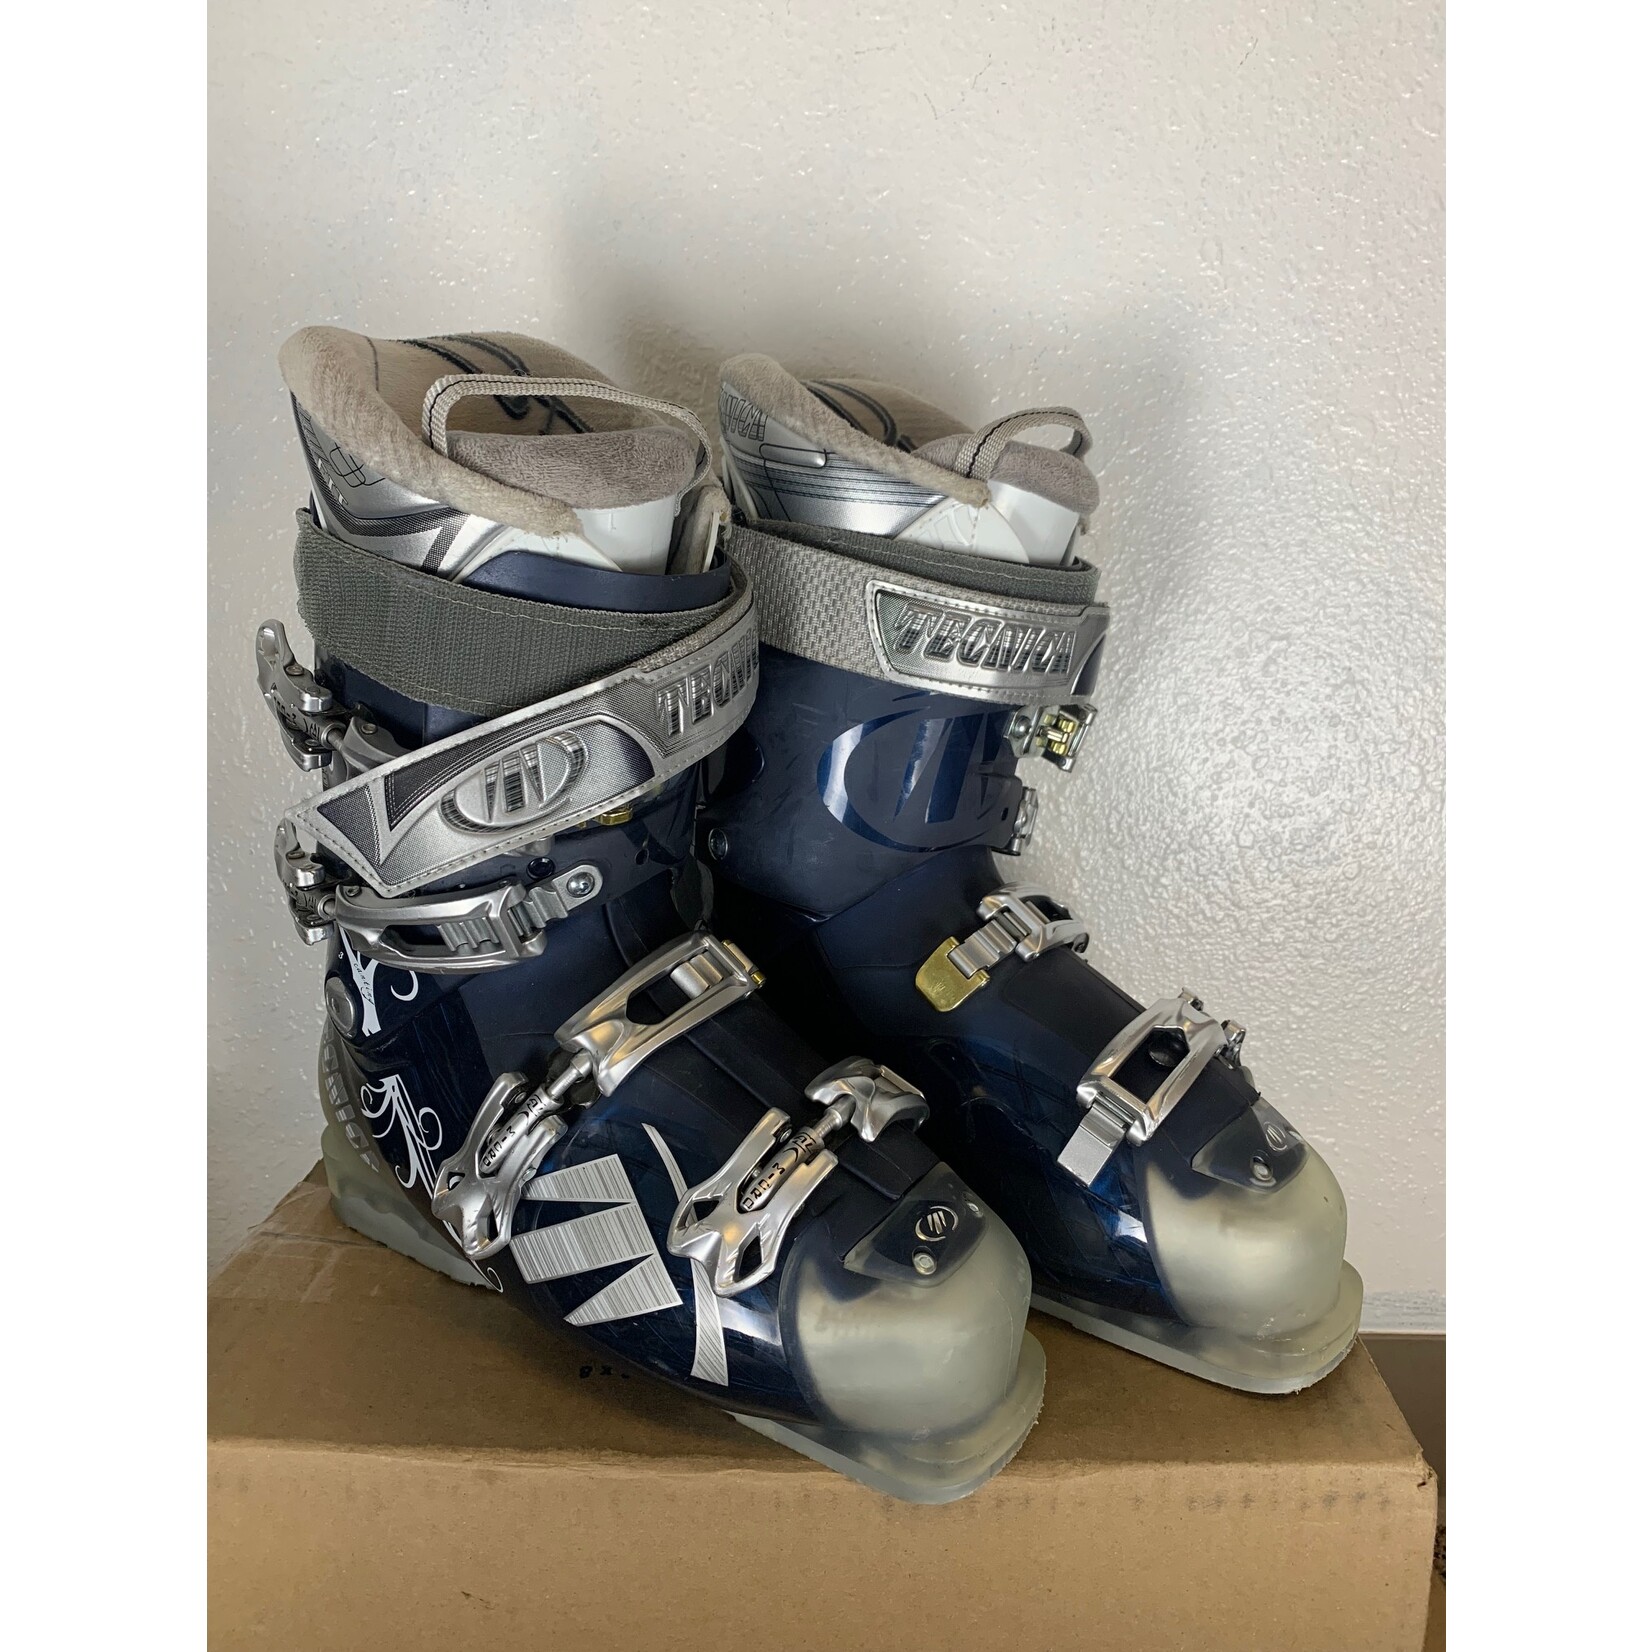 Tecnica Tecnica Vento 70 Ski Boots, Size 26/26.5